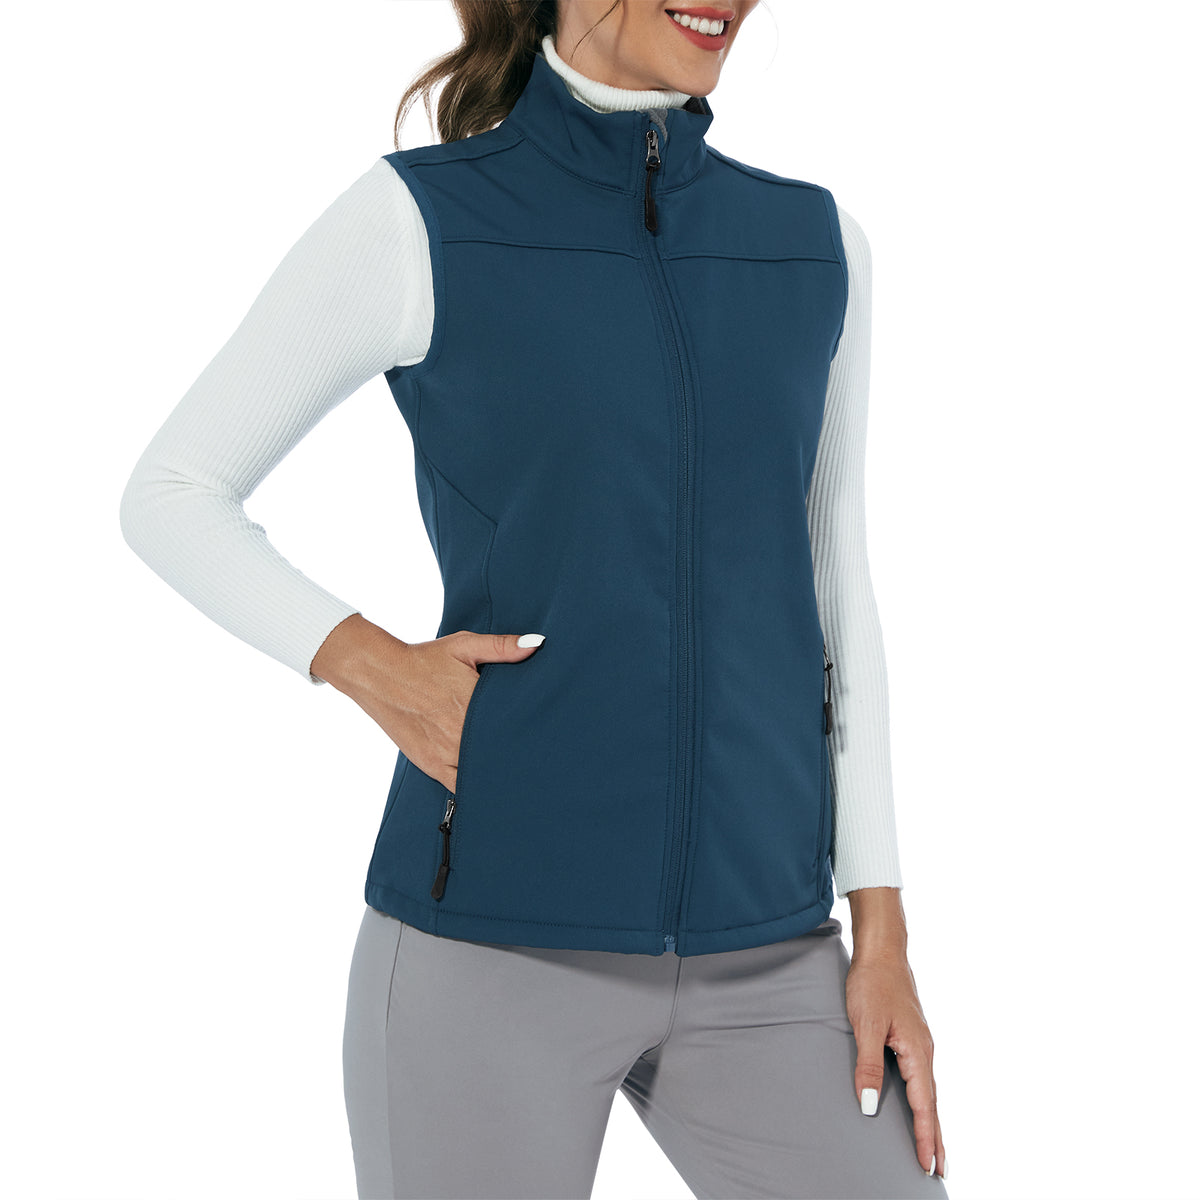 MOTEEPI Women Sleeveless Fleece Lined Lightweight Golf Vests Outerwear